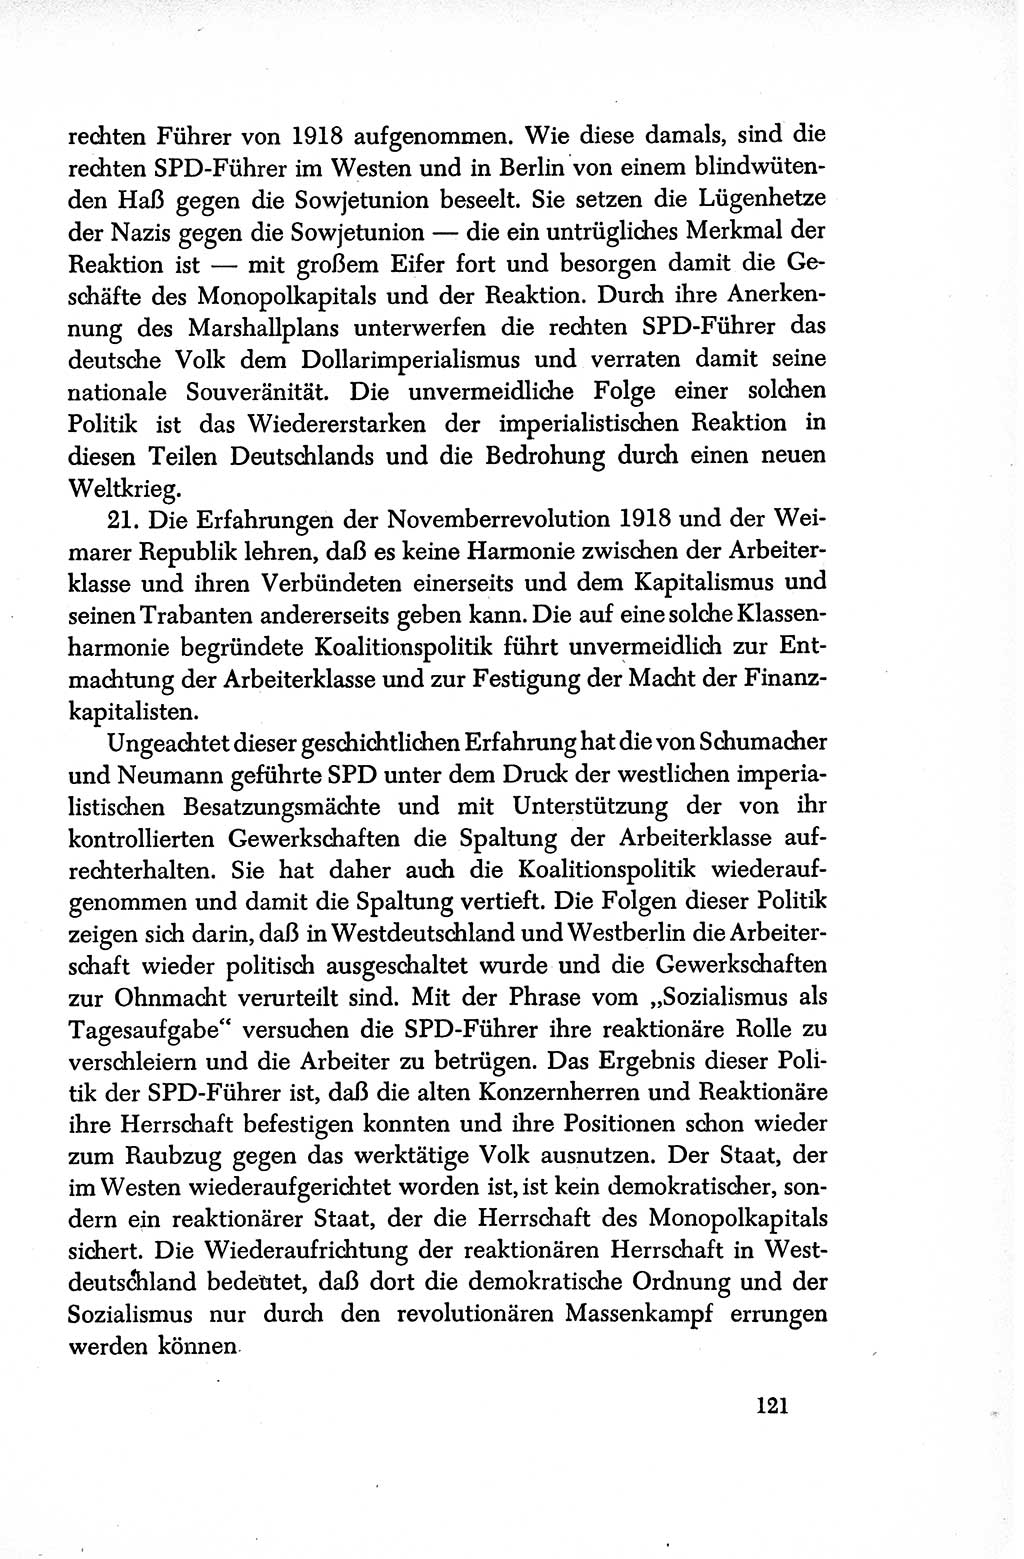 Dokumente der Sozialistischen Einheitspartei Deutschlands (SED) [Sowjetische Besatzungszone (SBZ) Deutschlands/Deutsche Demokratische Republik (DDR)] 1948-1950, Seite 121 (Dok. SED SBZ Dtl. DDR 1948-1950, S. 121)